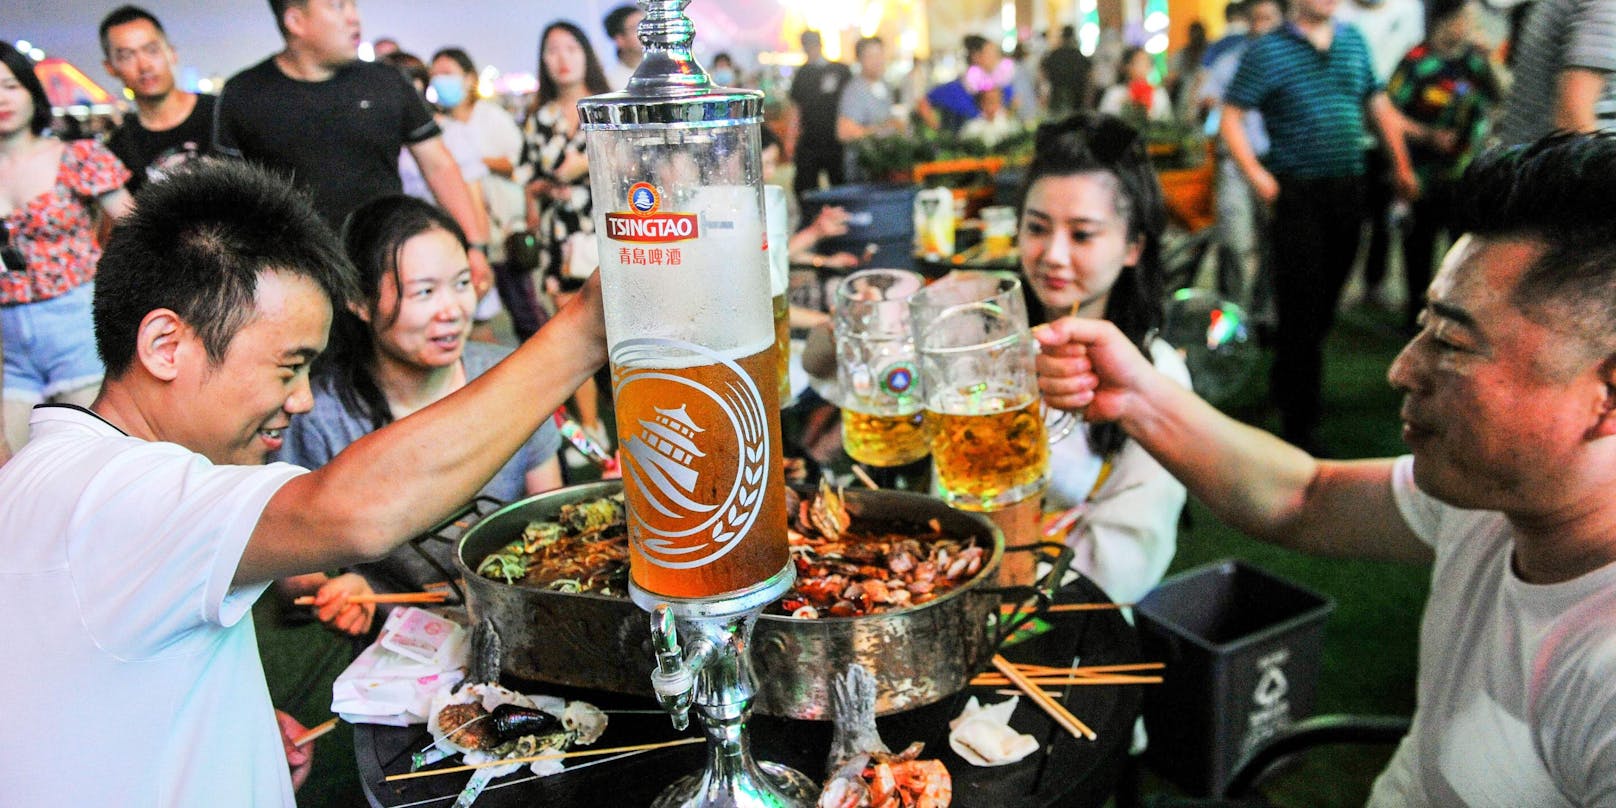 Hunderttausende Besucher strömen zum Bierfest von Qingdao,&nbsp;"Chinas Oktoberfest"